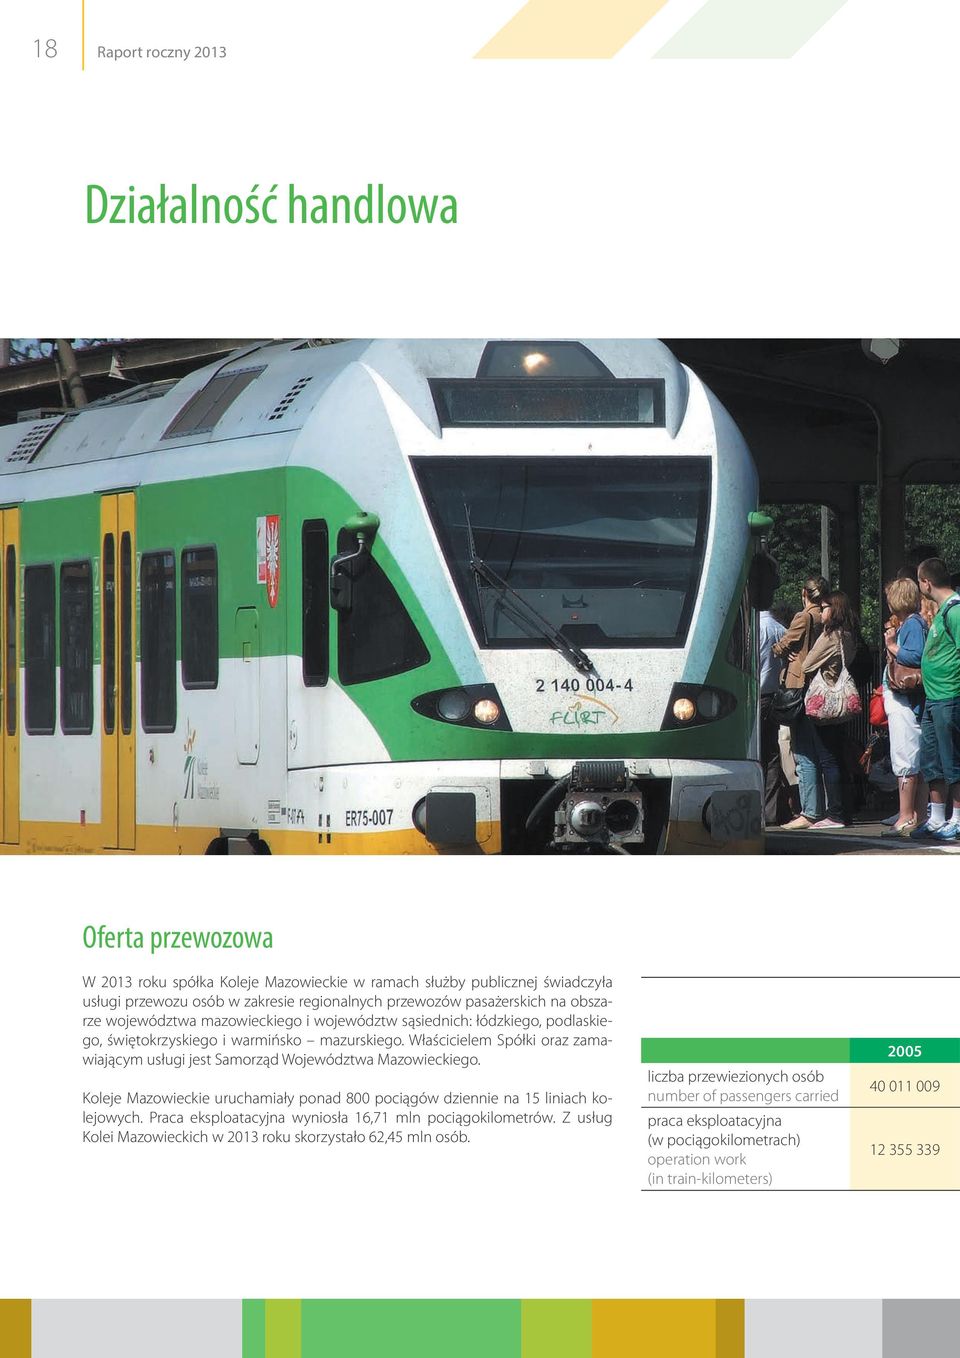 Właścicielem Spółki oraz zamawiającym usługi jest Samorząd Województwa Mazowieckiego. Koleje Mazowieckie uruchamiały ponad 800 pociągów dziennie na 15 liniach kolejowych.